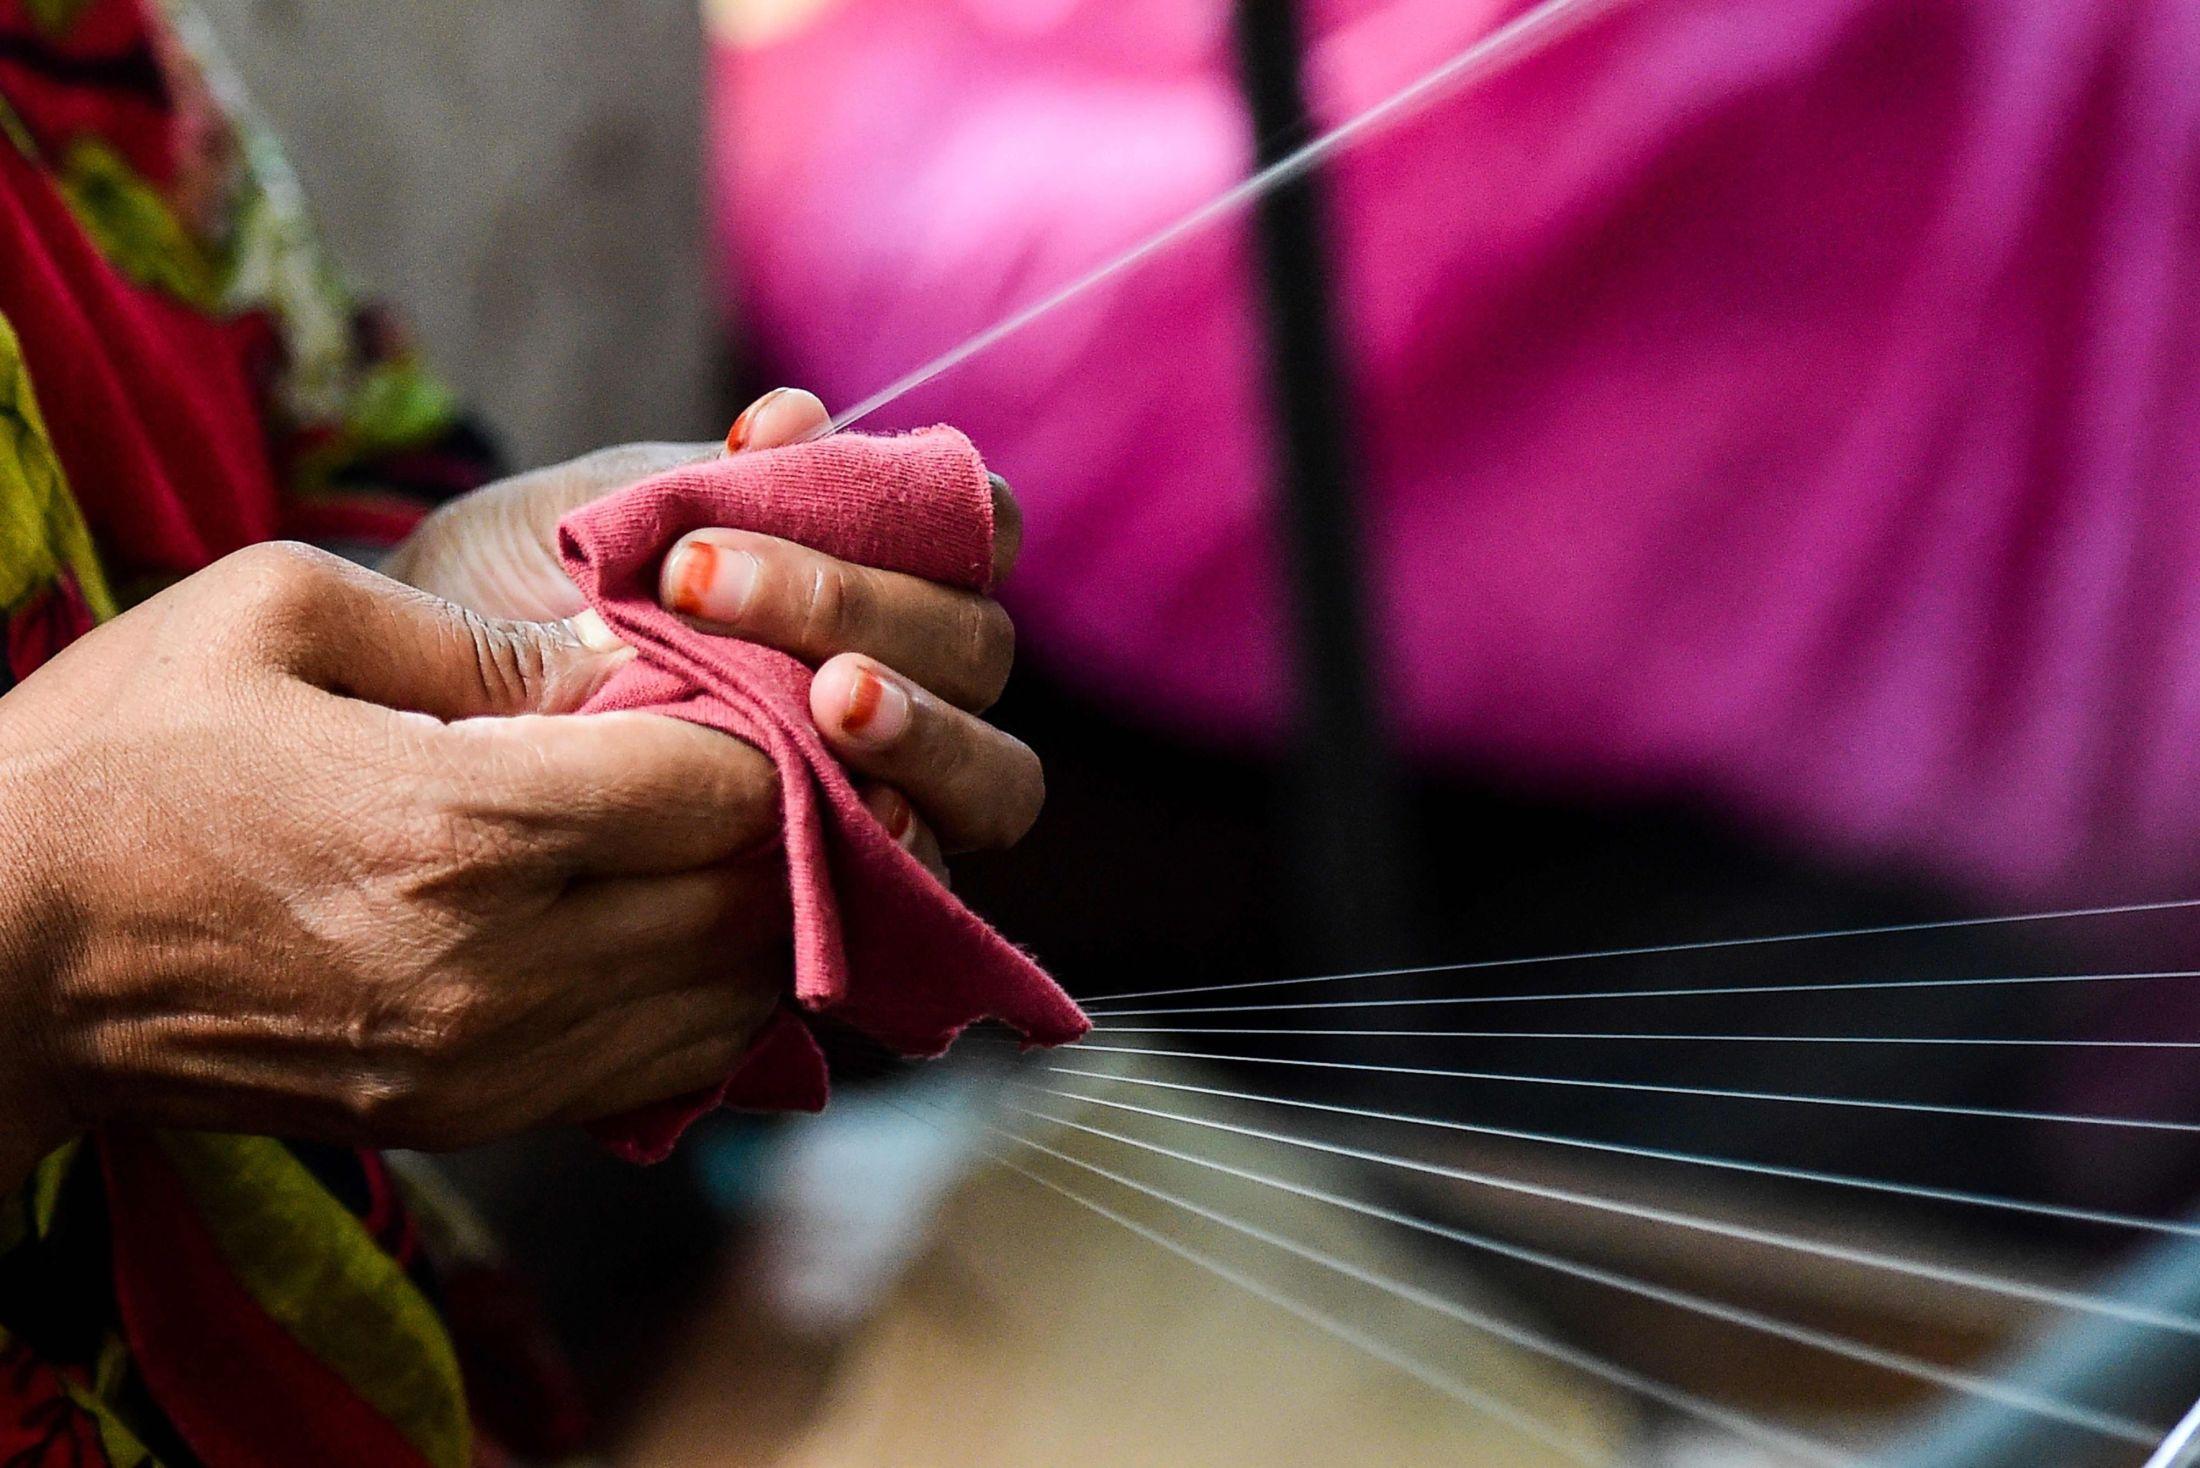 TEKSTIL: Flere merkevarer er åpne om hvem som lager klærne og hvordan tekstilene blir til, ifølge Fashion Revolution. Foto: AFP